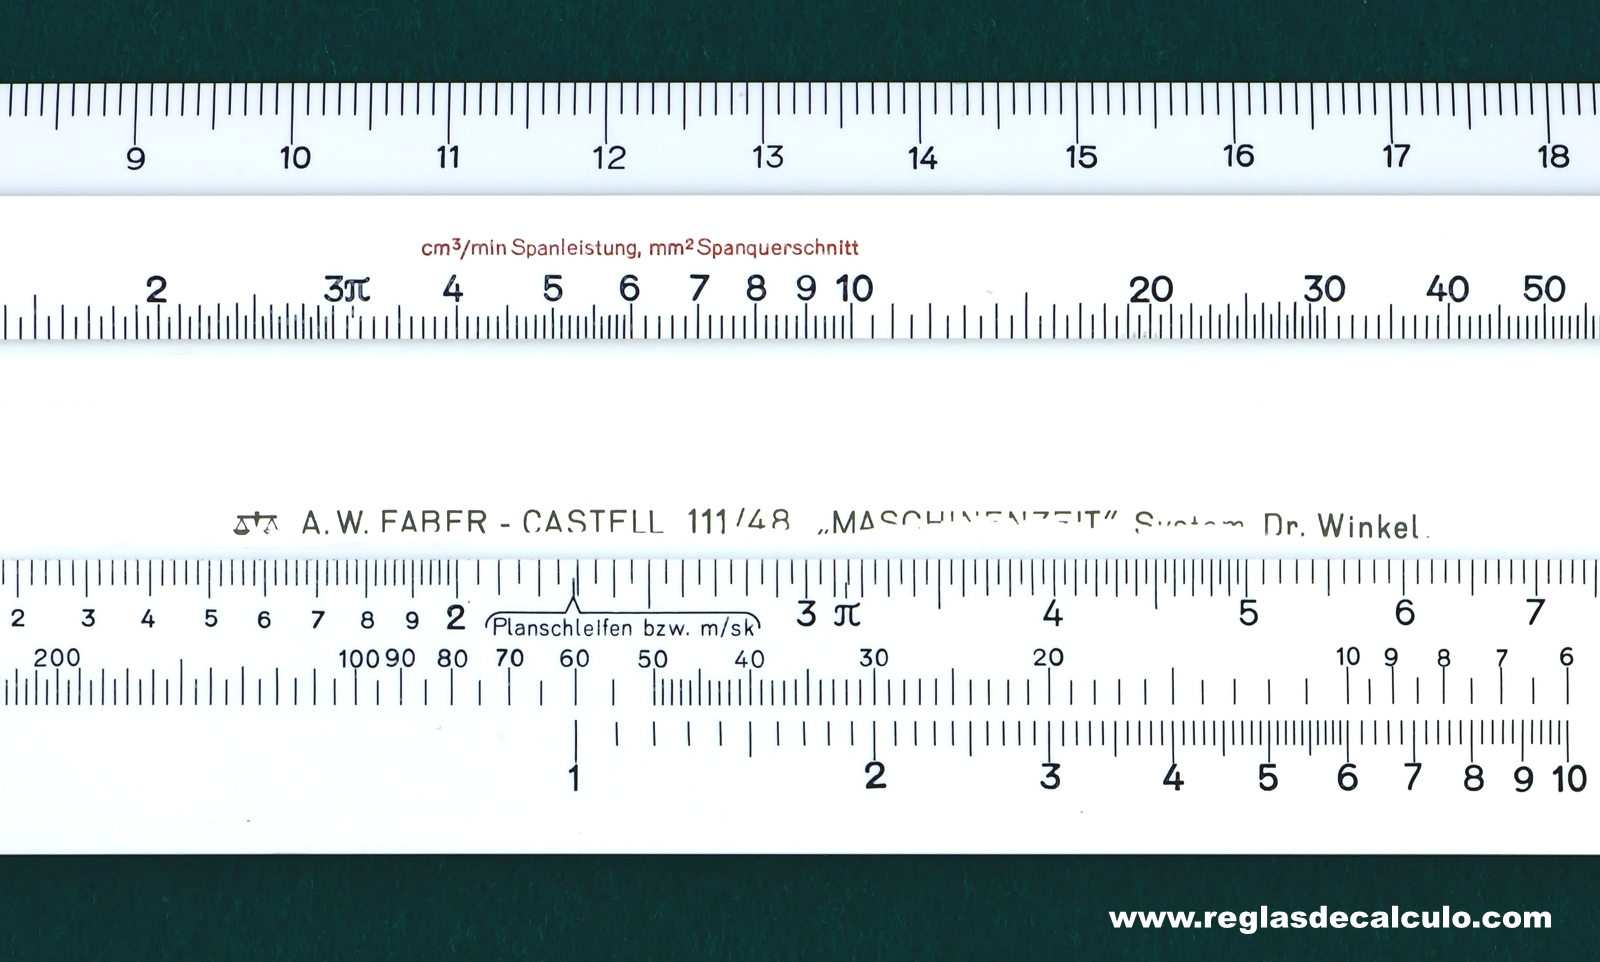 Faber Castell 111/48 Regla de Calculo Slide rule